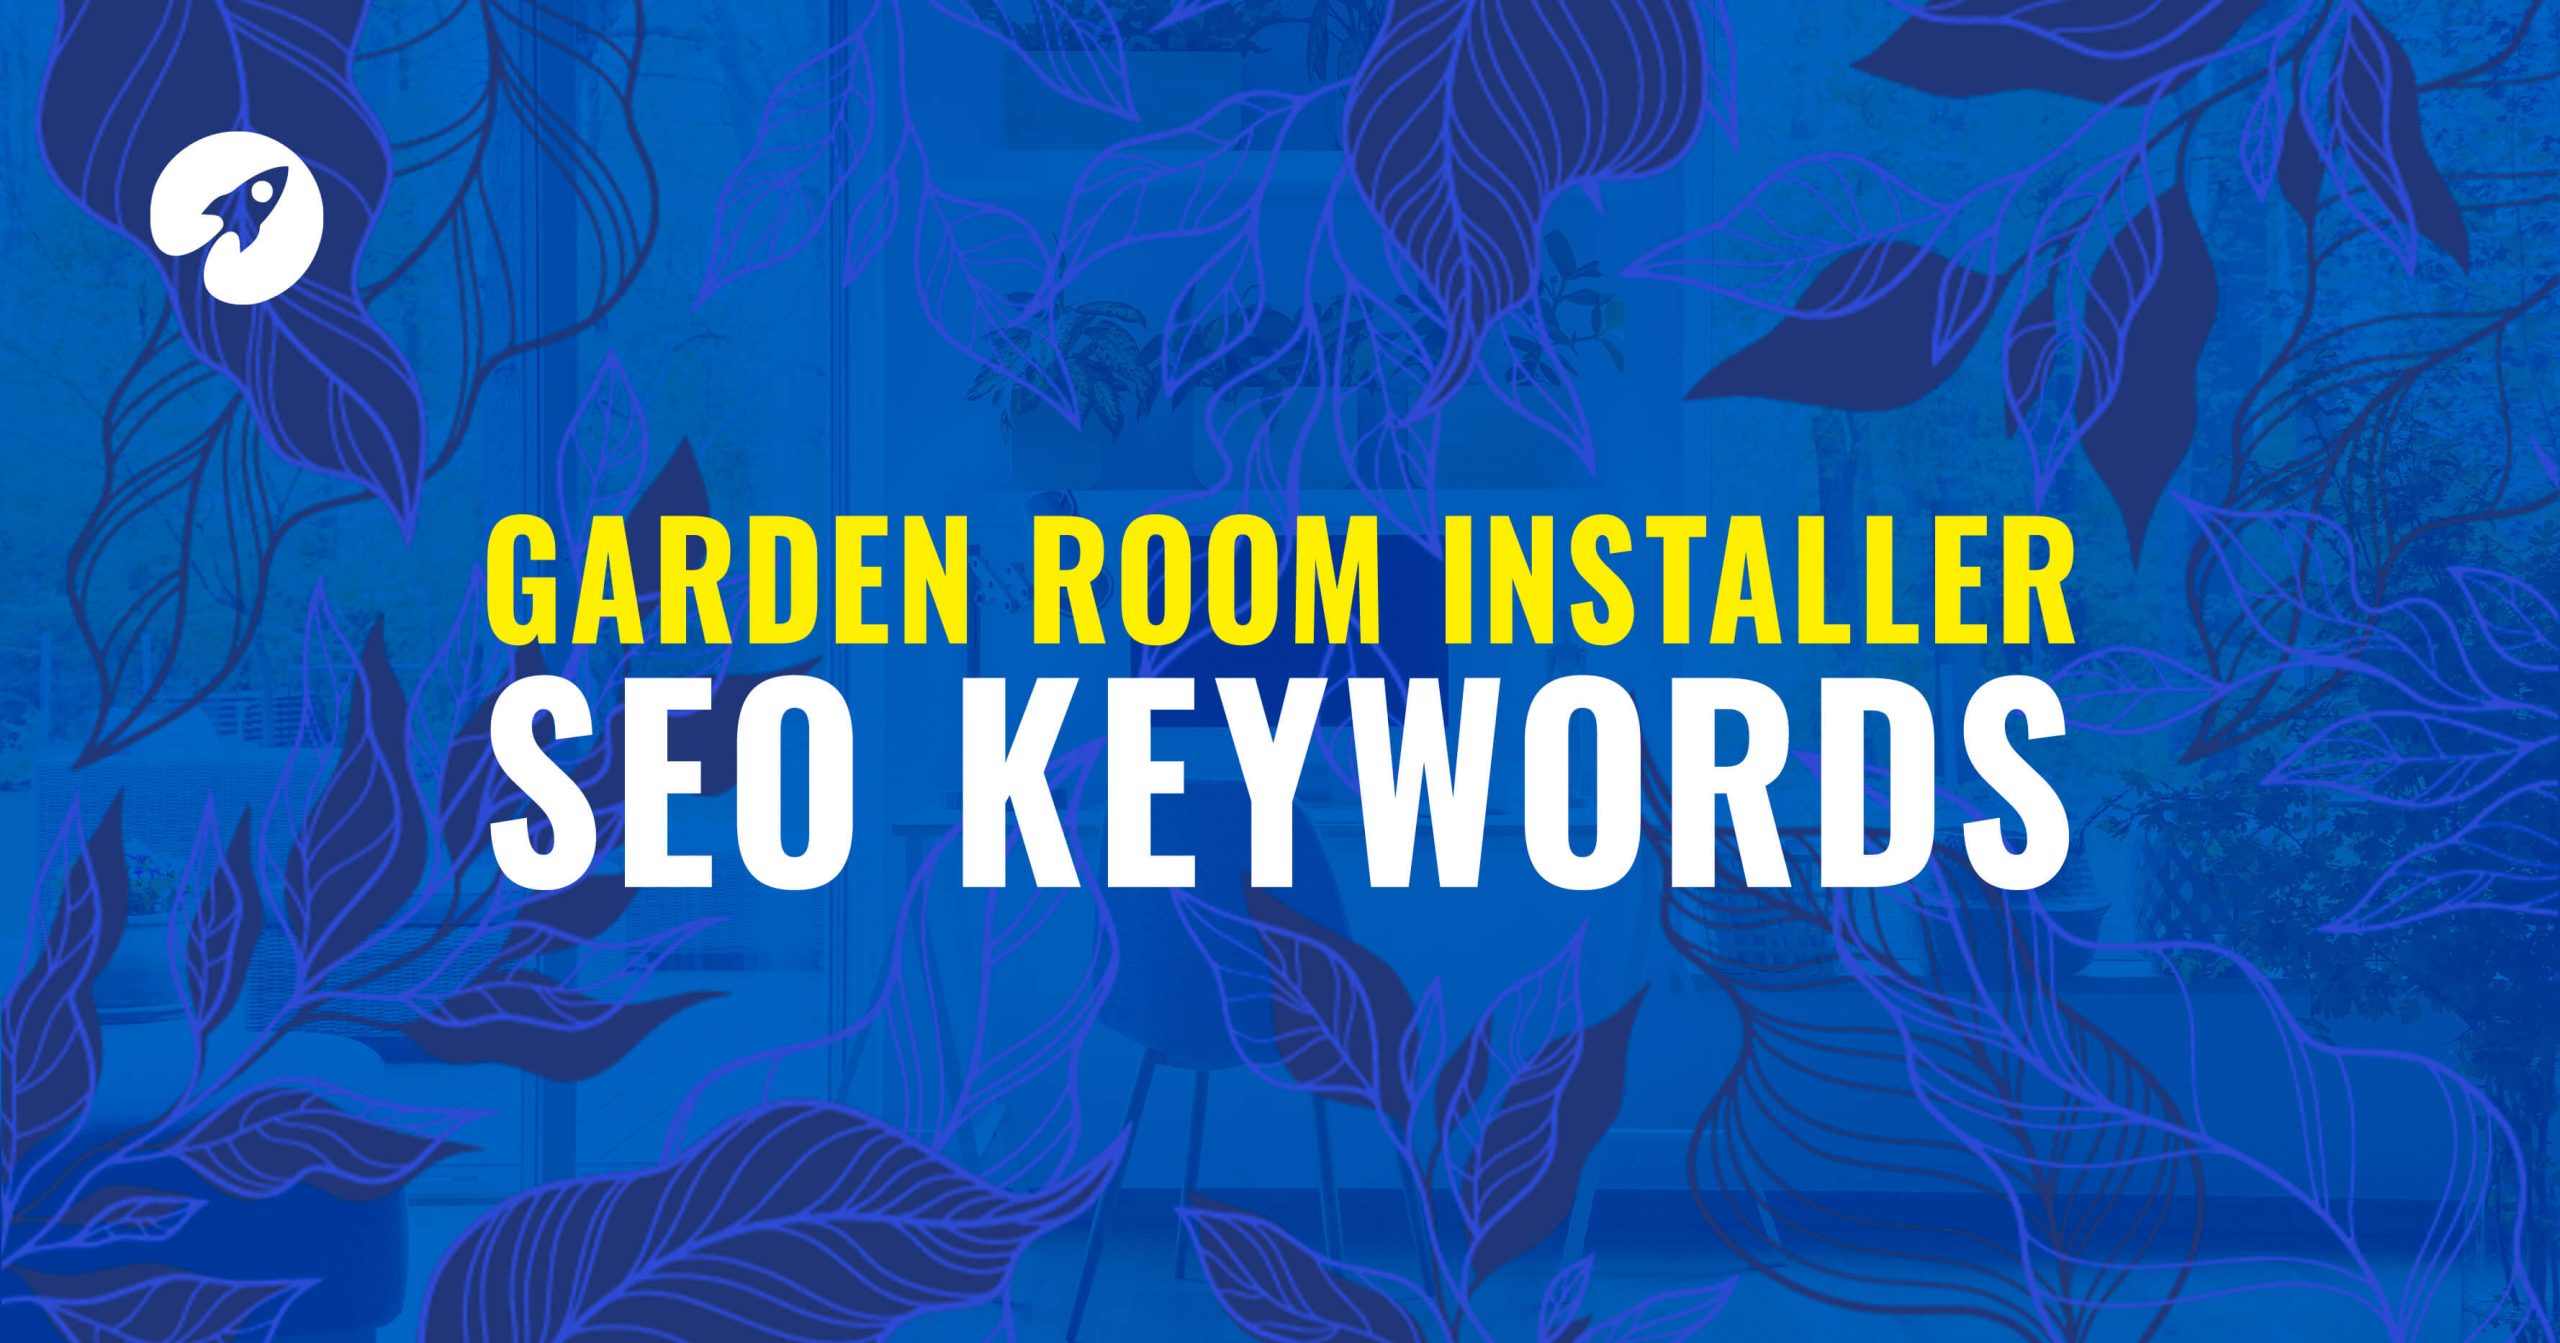 Garden room installer SEO keywords